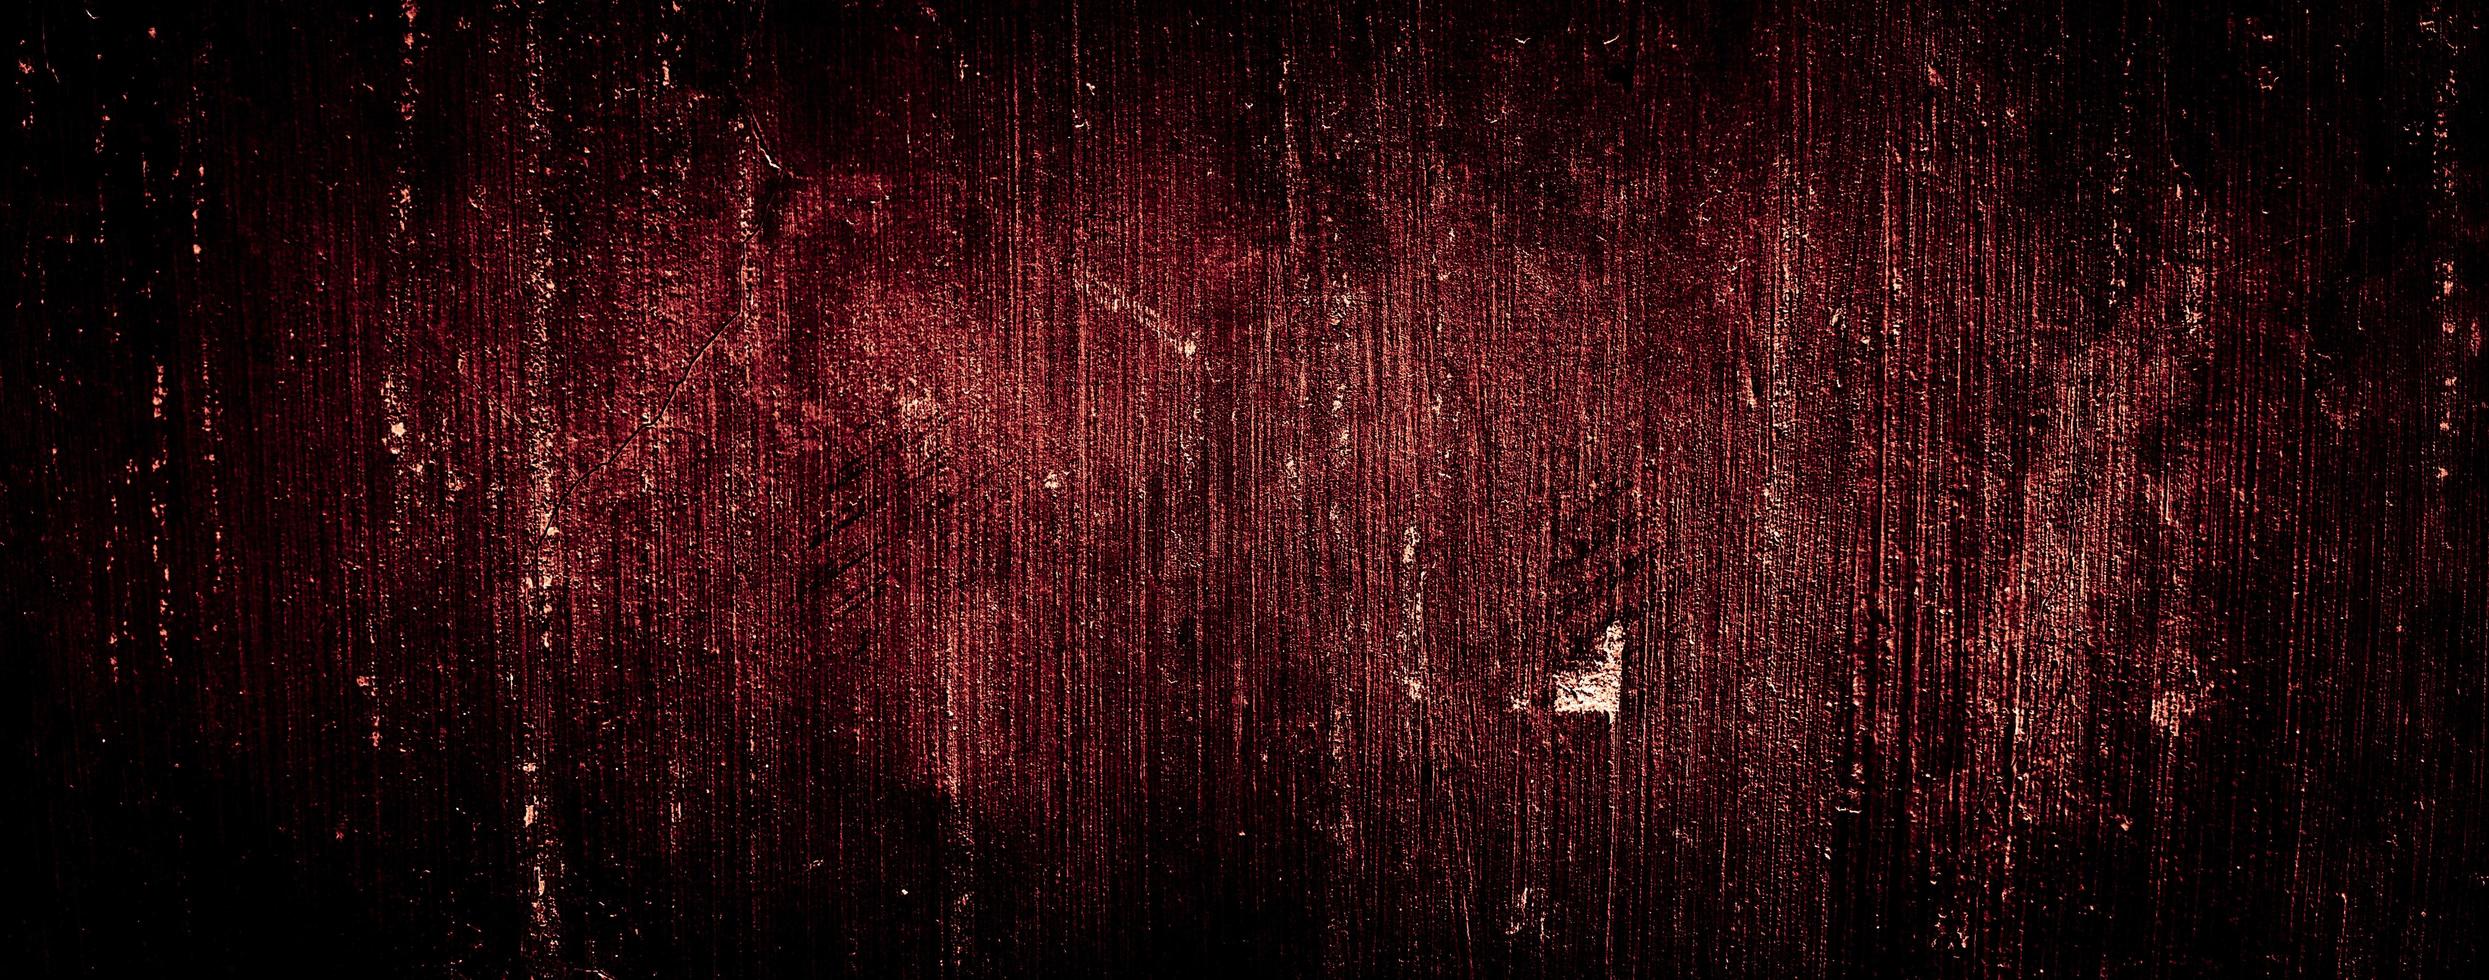 textura abstrata vermelho escuro fundo sujo de parede velha foto